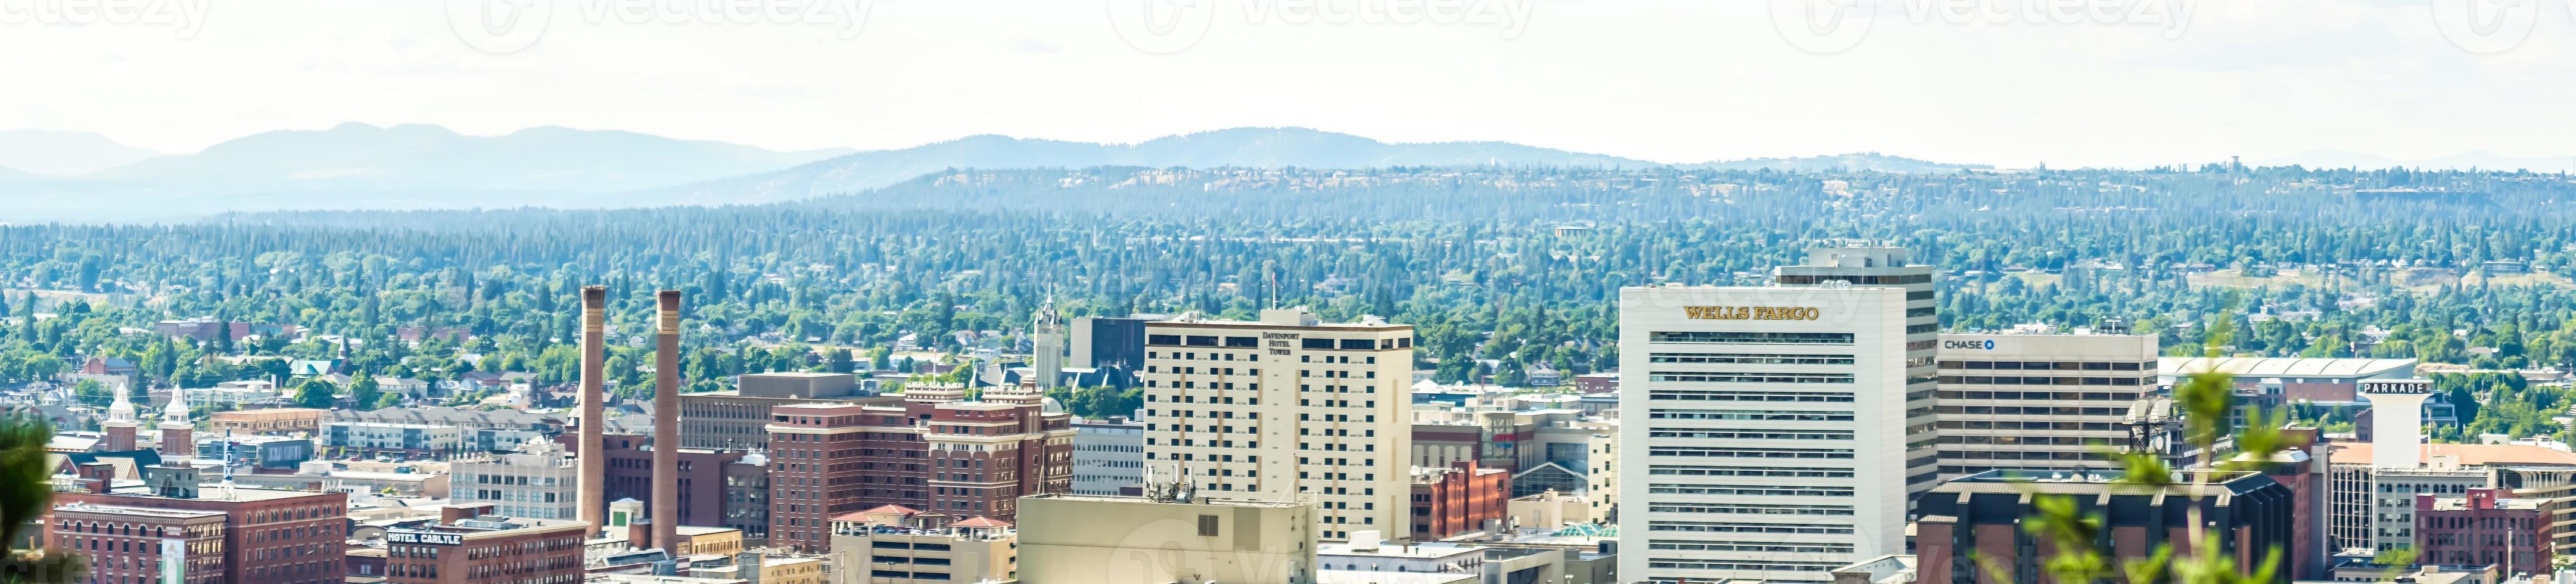 Spokane Washington vue sur les toits de la ville et la vallée de Spokane photo